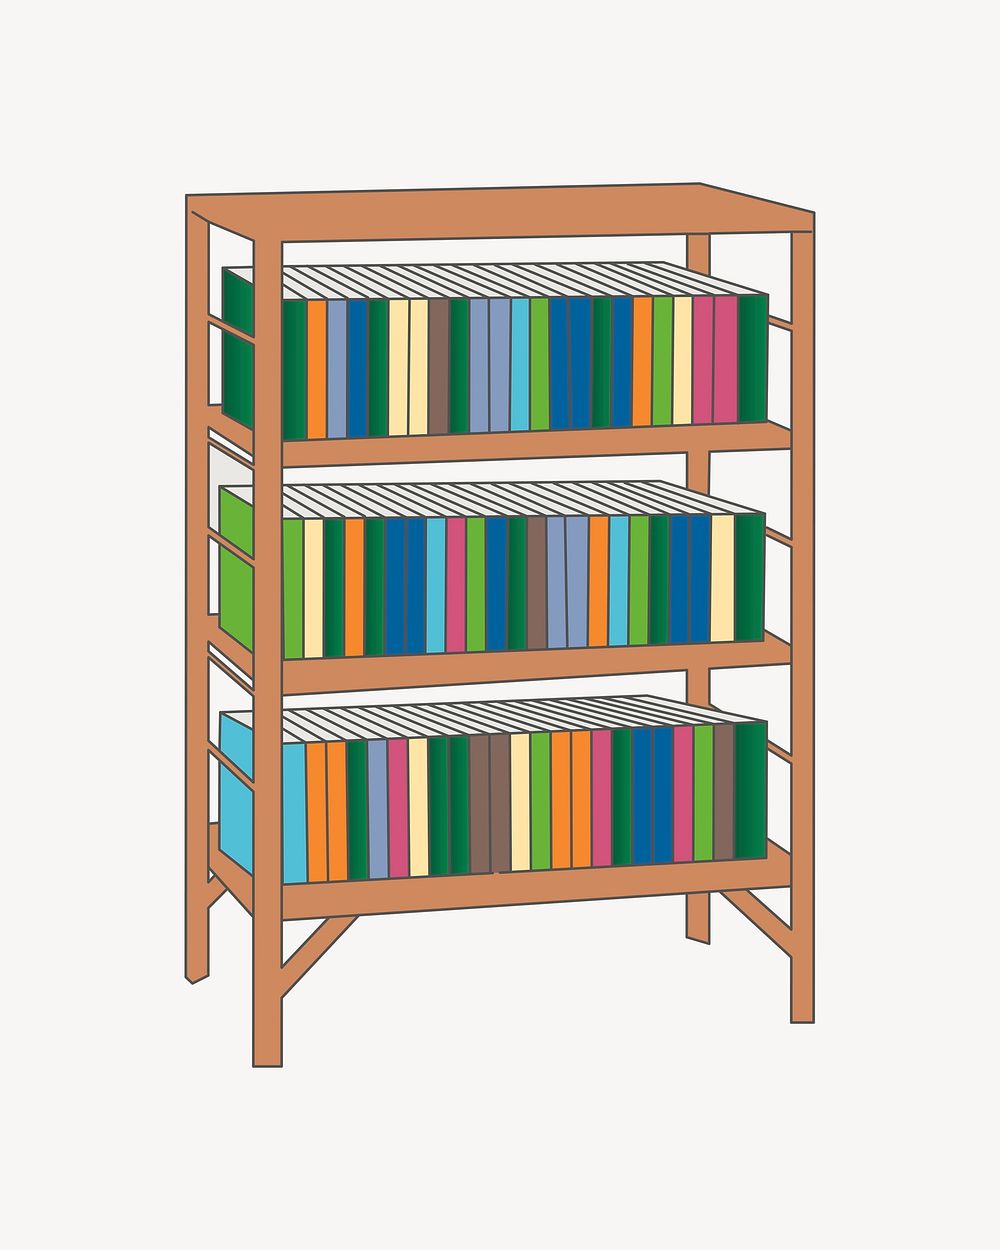 Bookshelf clipart, illustration psd. Free public domain CC0 image.